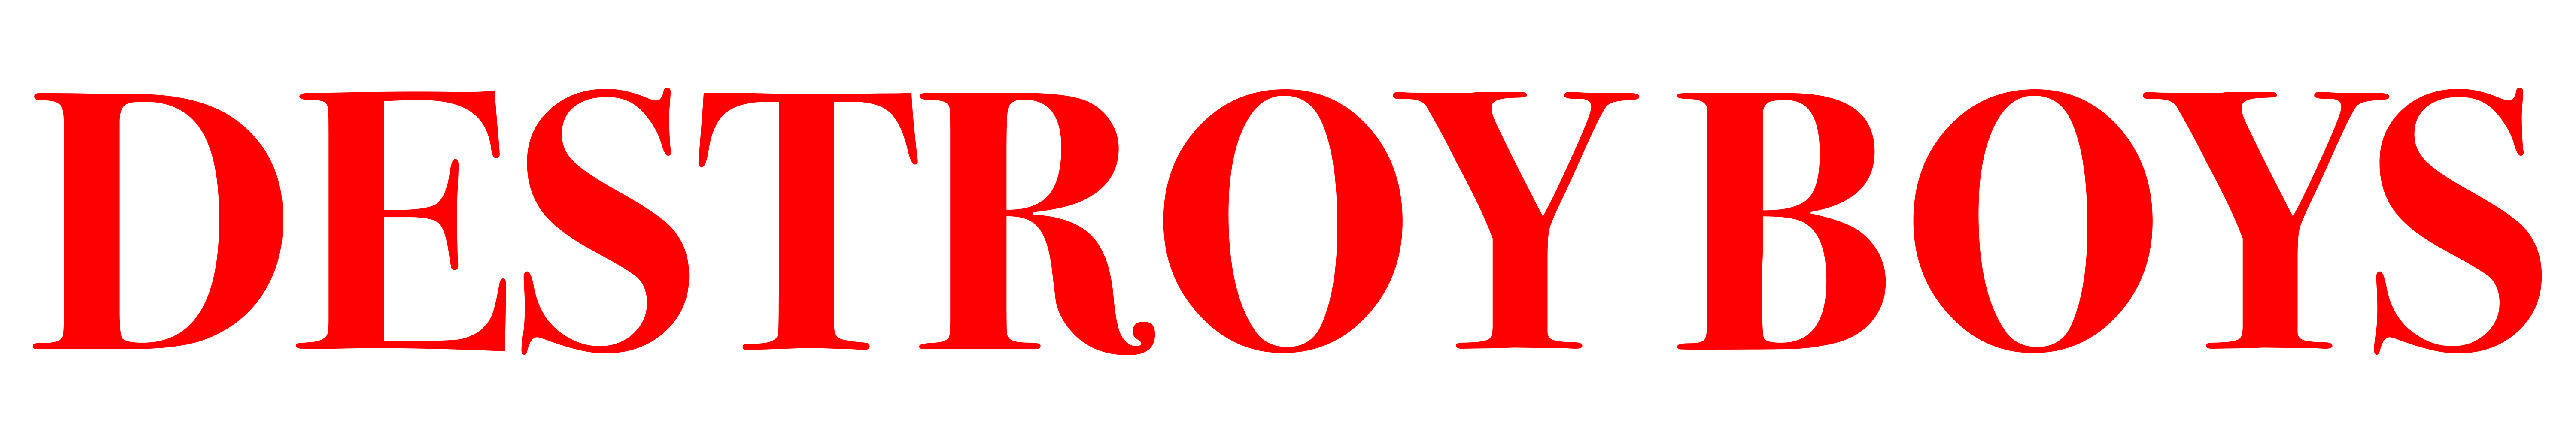 destroy boys red logo